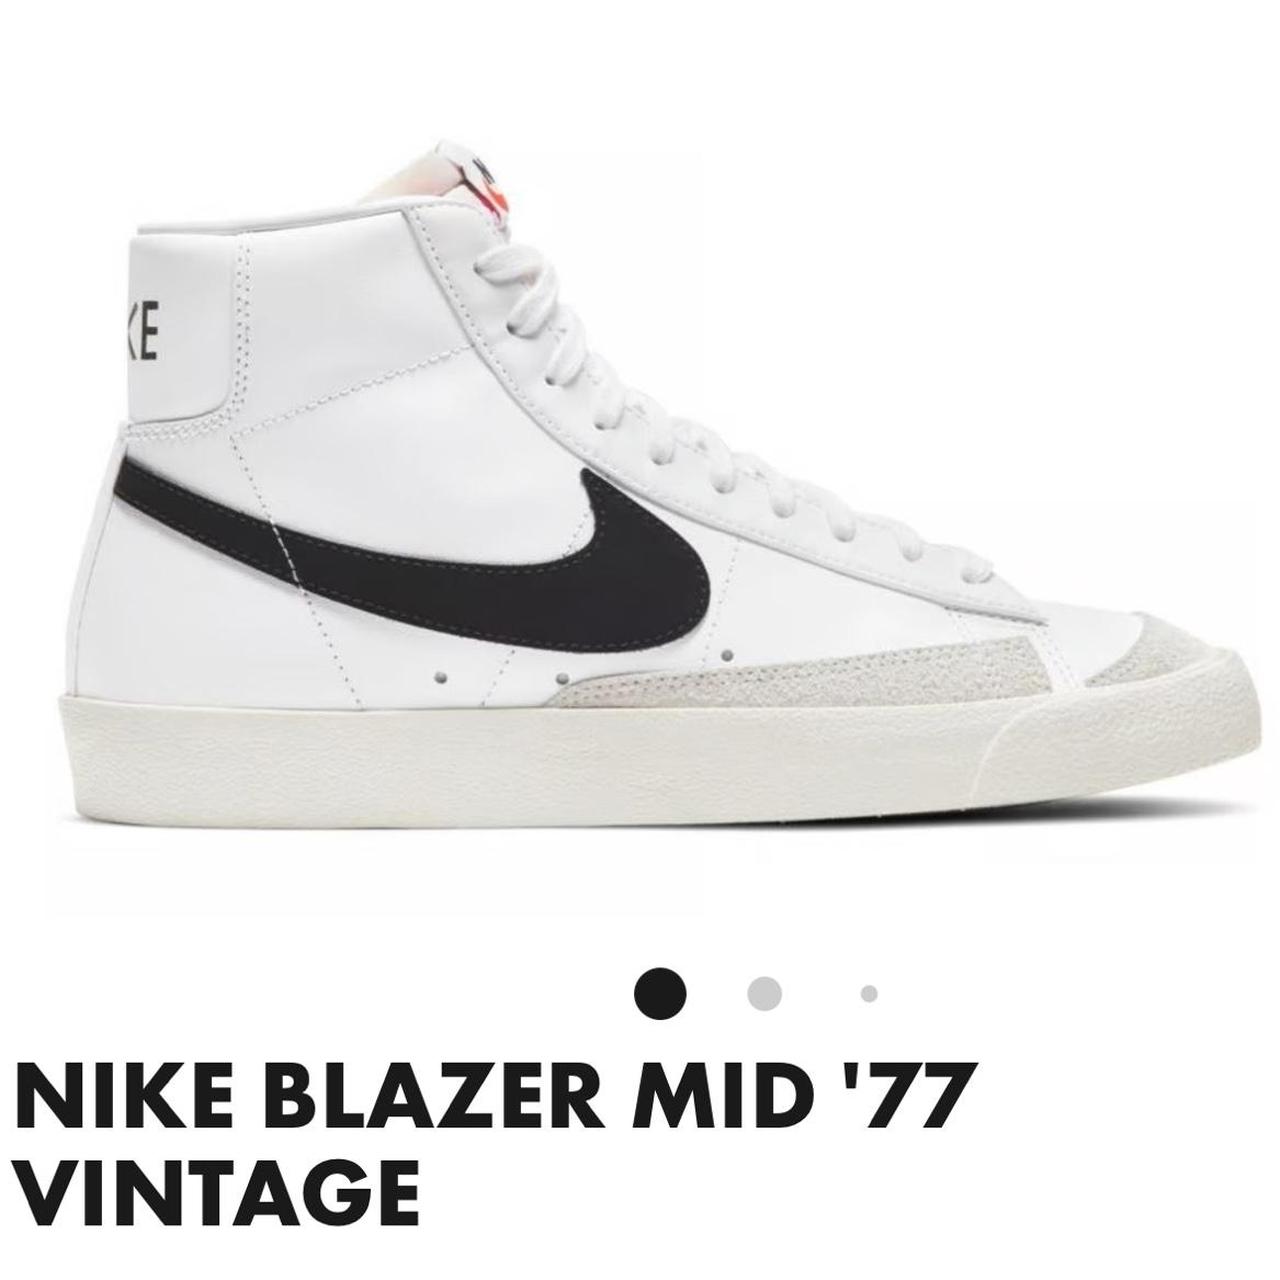 Nike Blazer Mid '77 Vintage Sneakers RRP $140 Size... - Depop